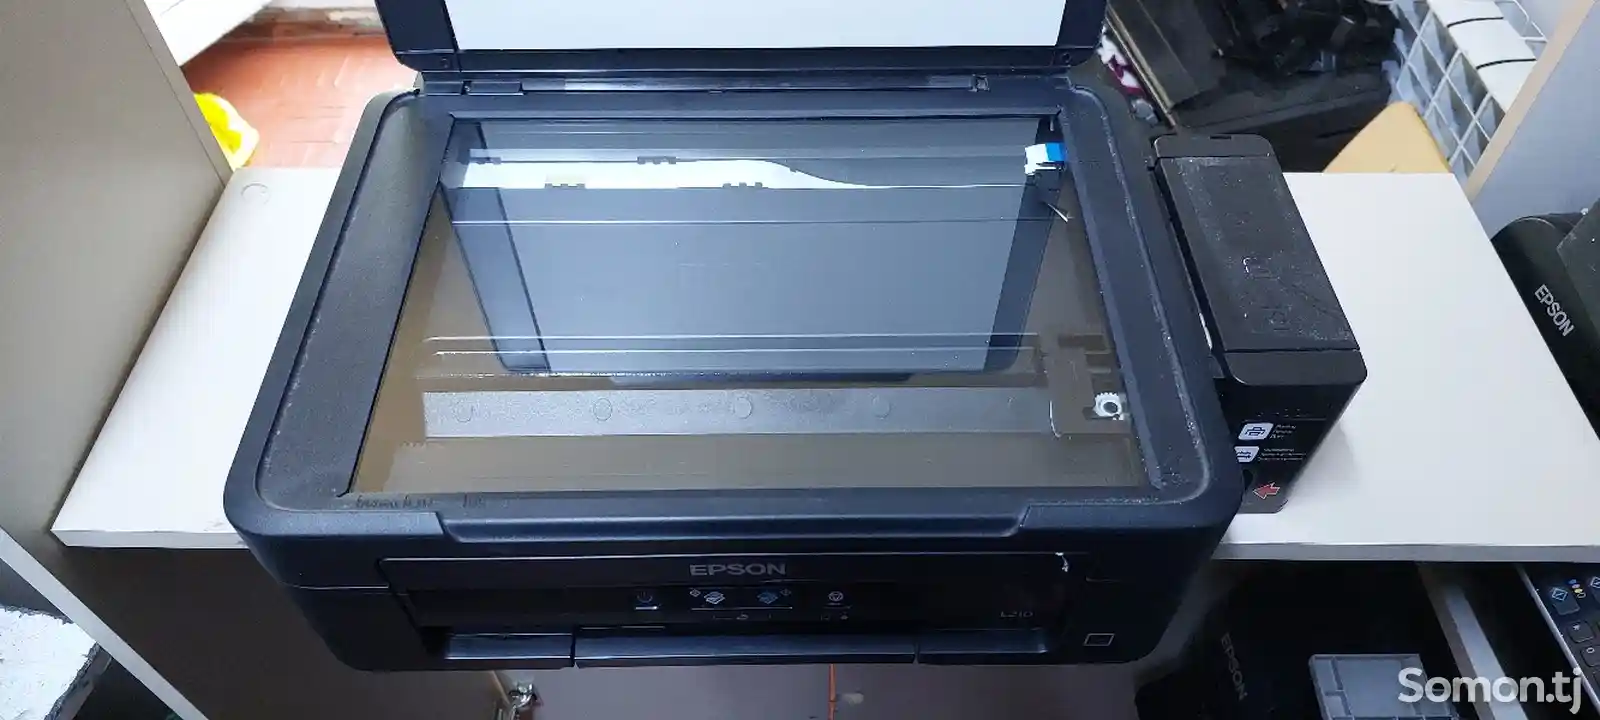 Принтер Epson l210 A4-2